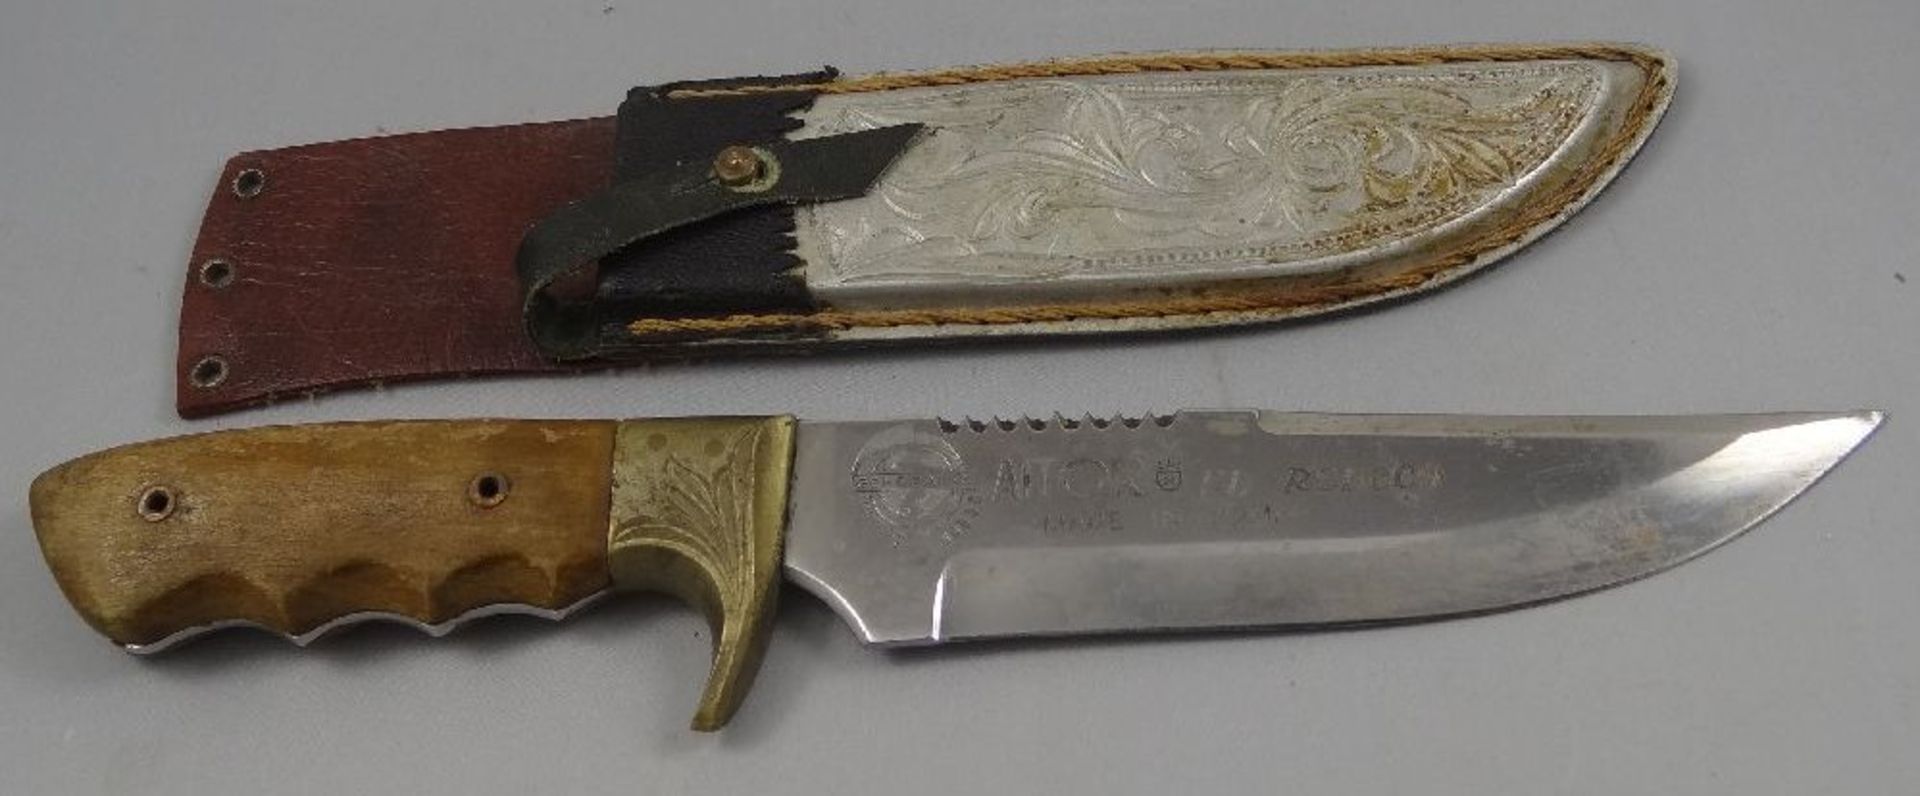 altes Jagdmesser "Aitor" Spain, Lederscheide, Holzgriff, Gebrauchsspuren, L-31,5 cm - Bild 3 aus 6